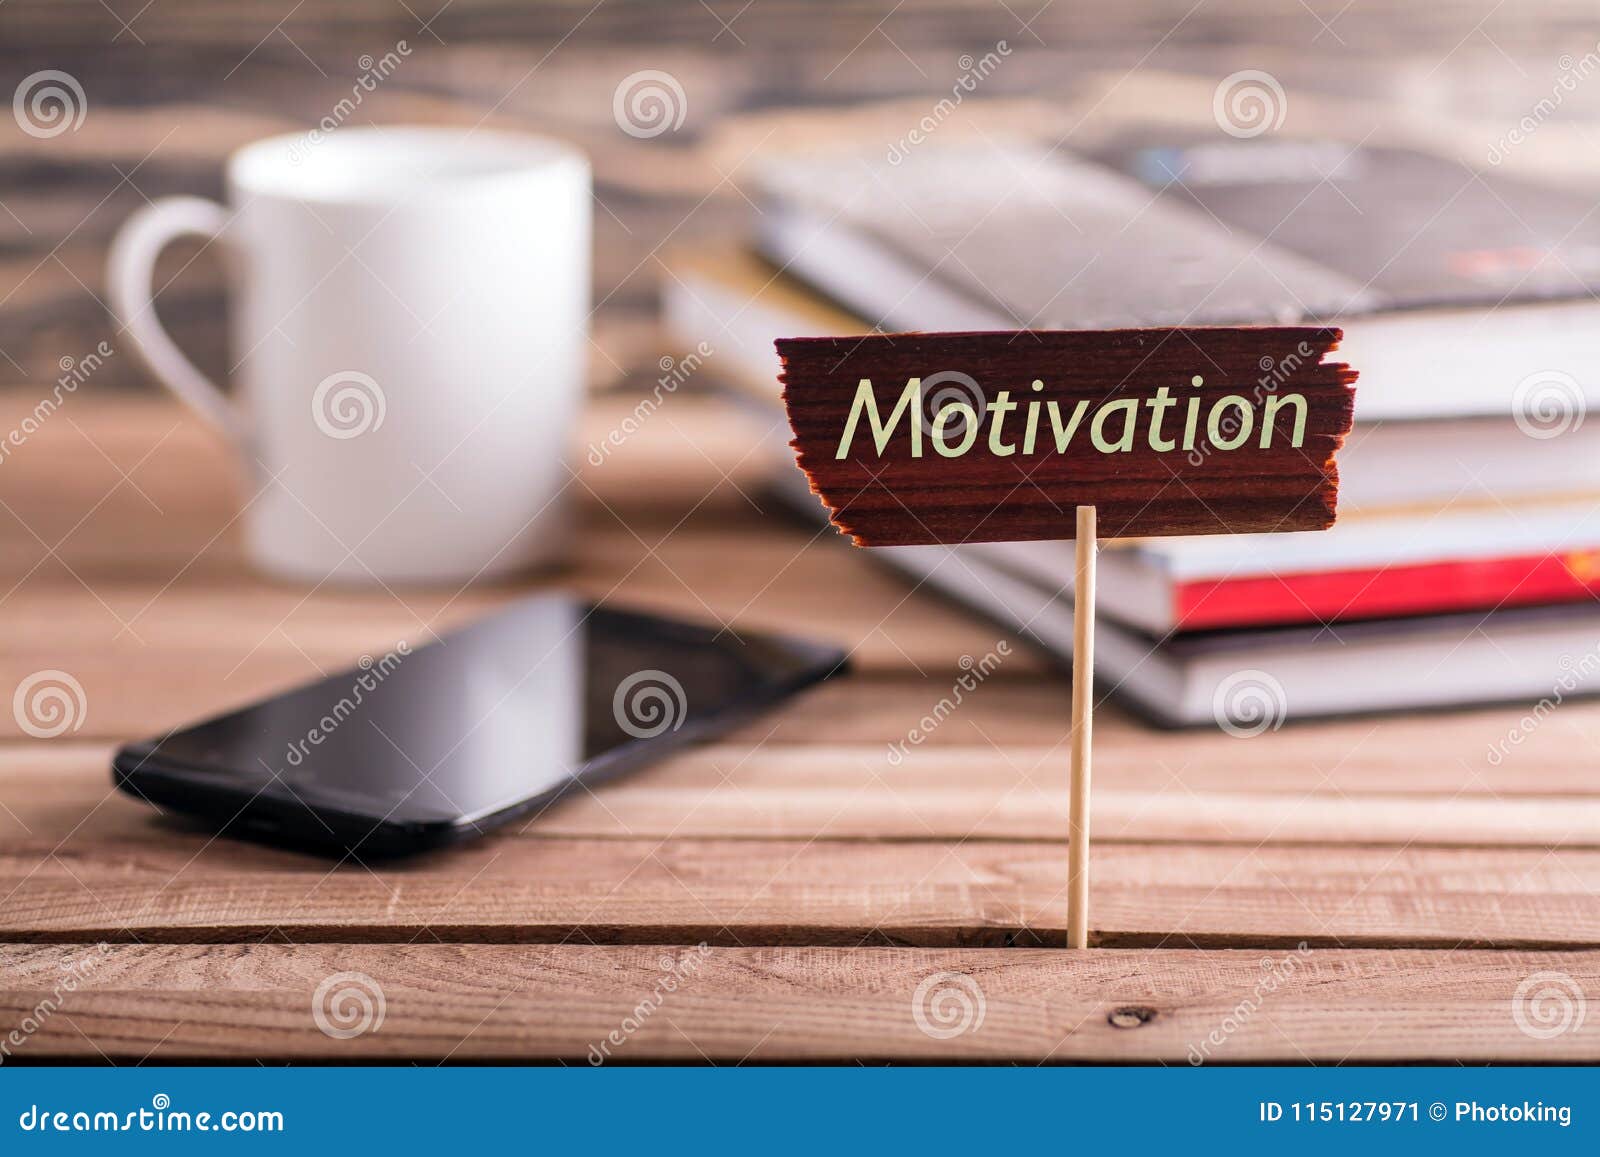 motivation sign